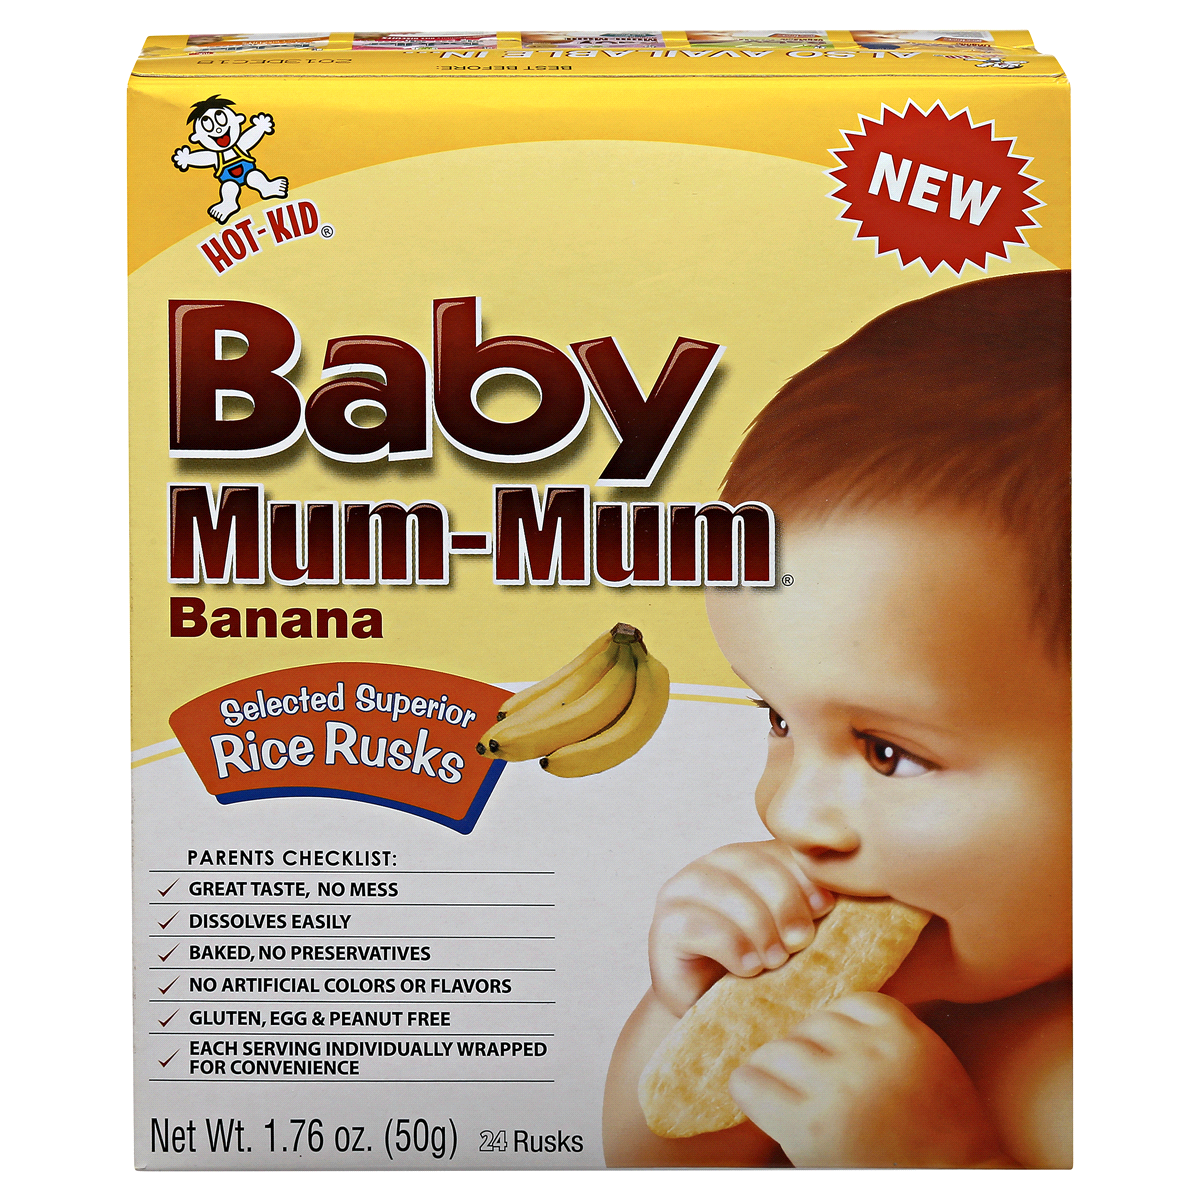 slide 3 of 6, Hot-Kid Baby Mum-Mum Rice Rusks, Banana, 1.76 oz